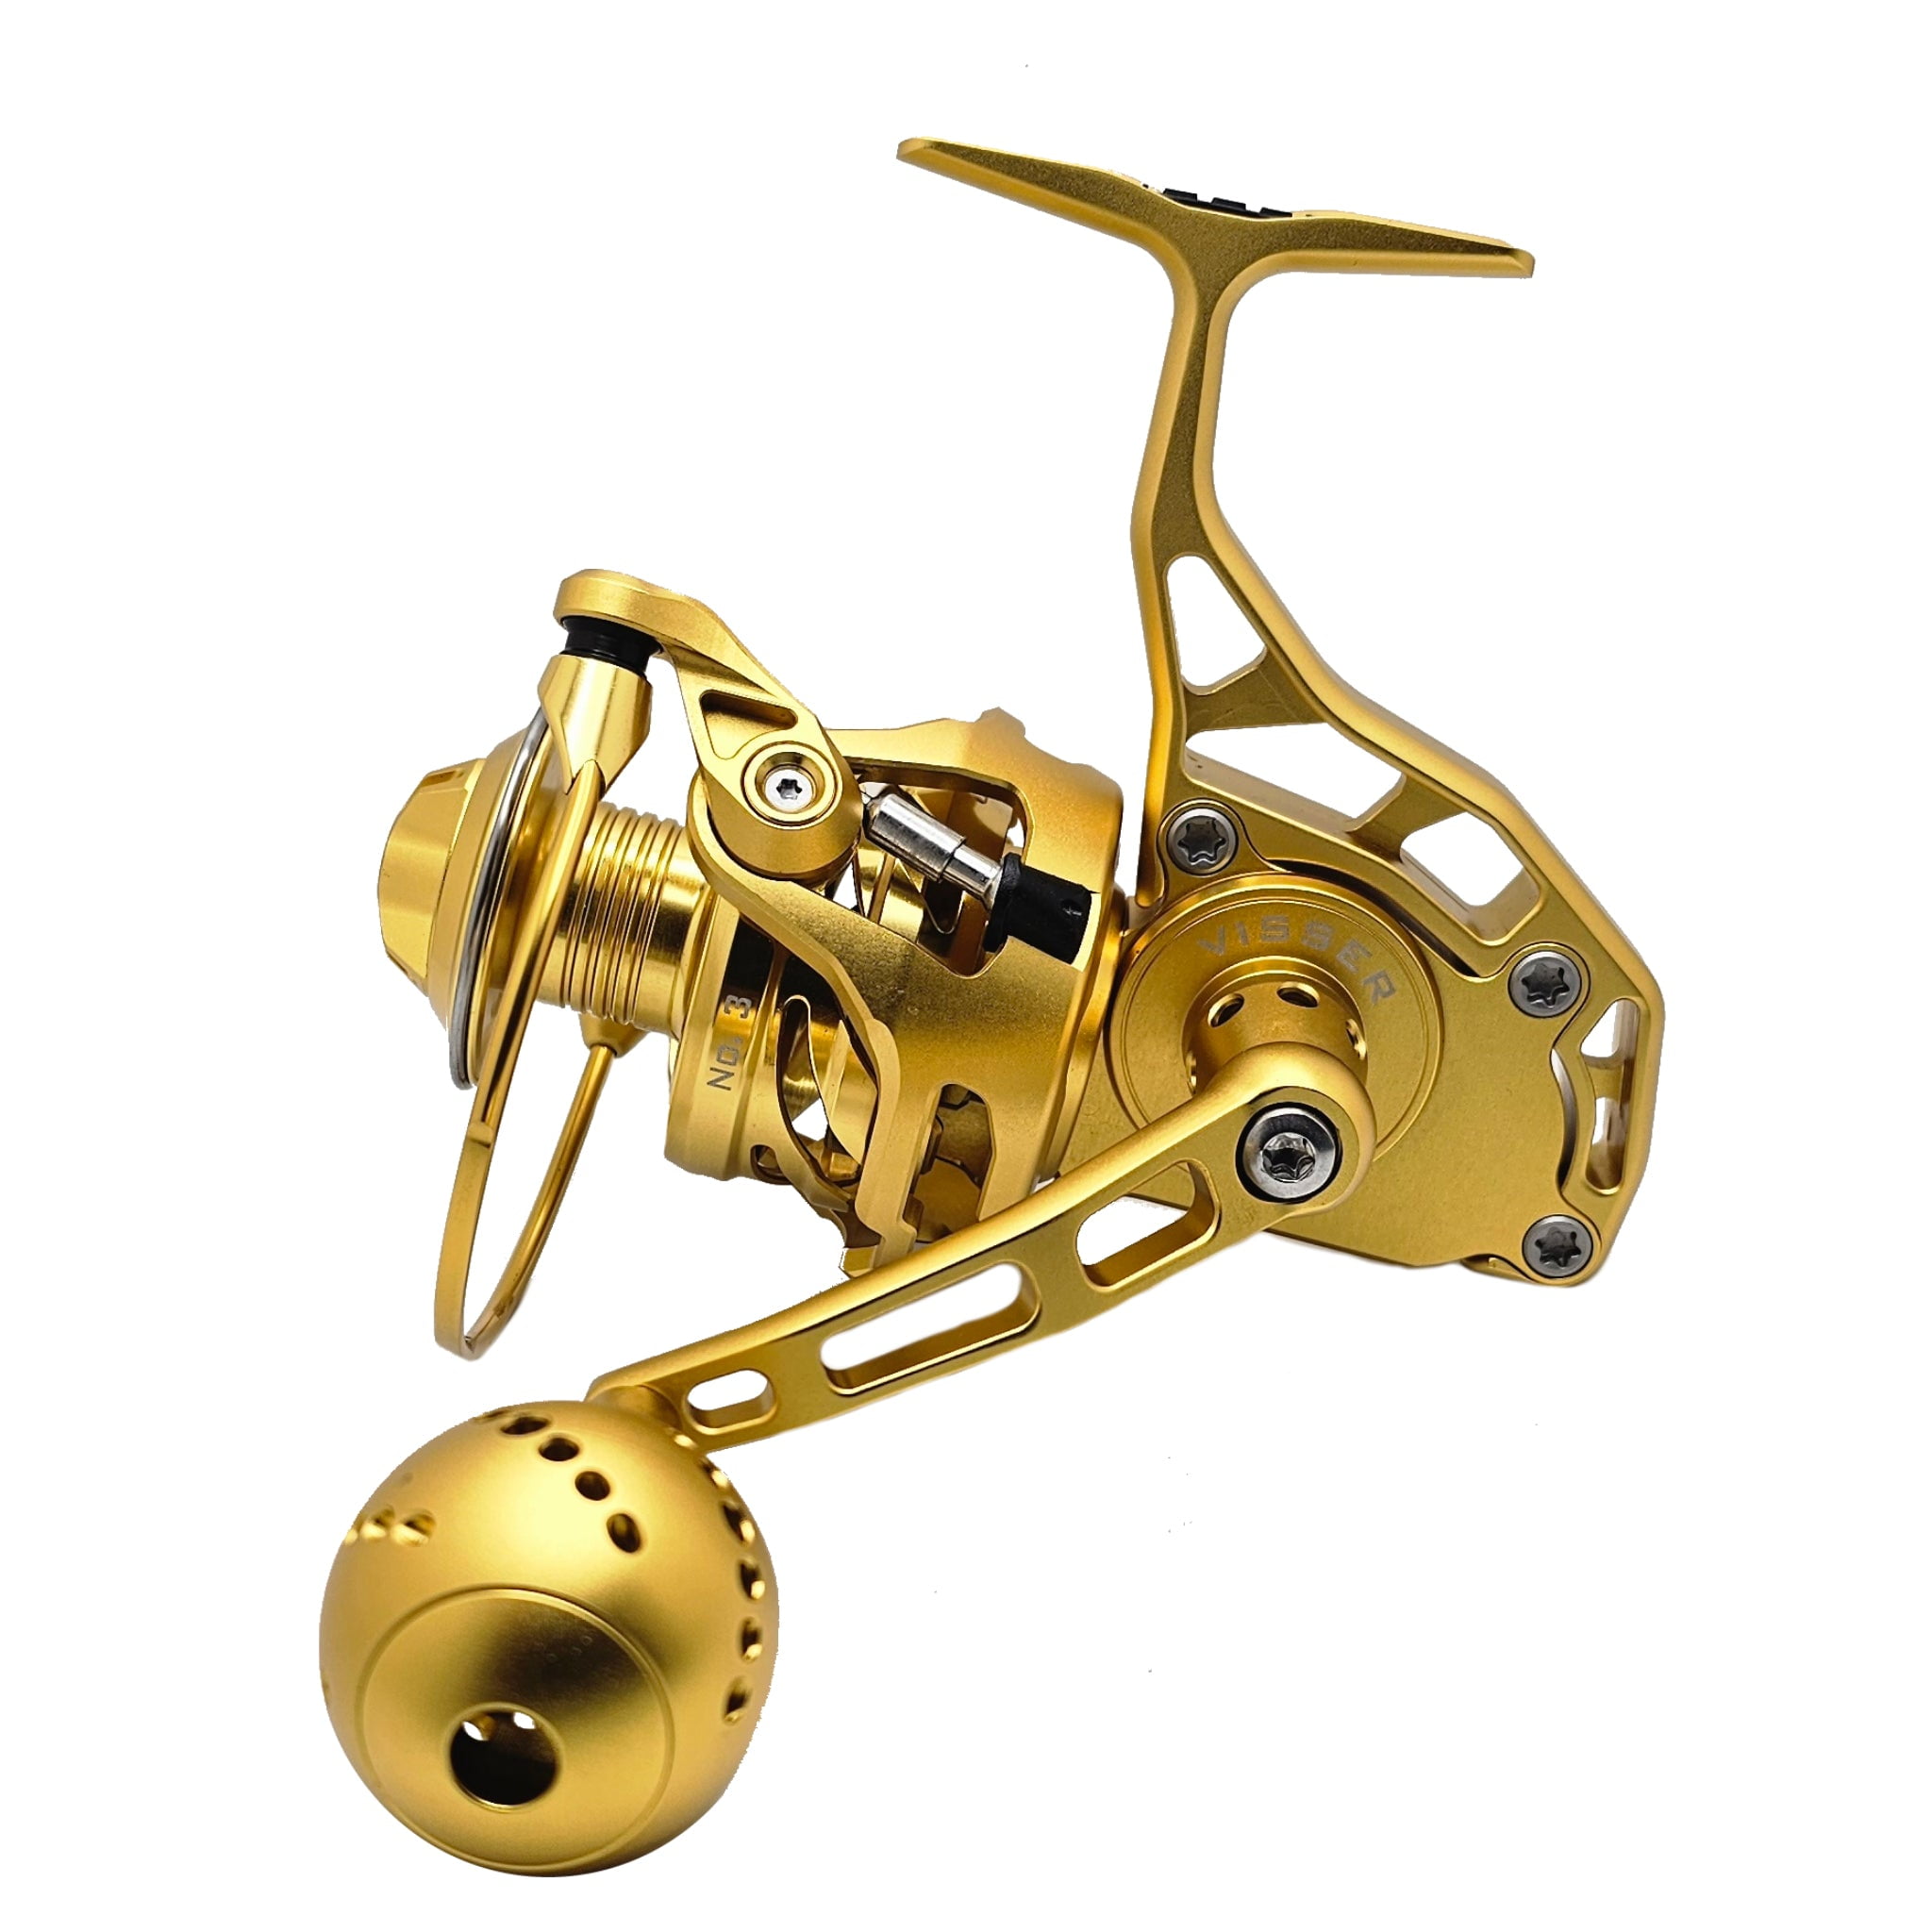 Visser No. Series Spinning Fishing Reels Model: No. 3G 